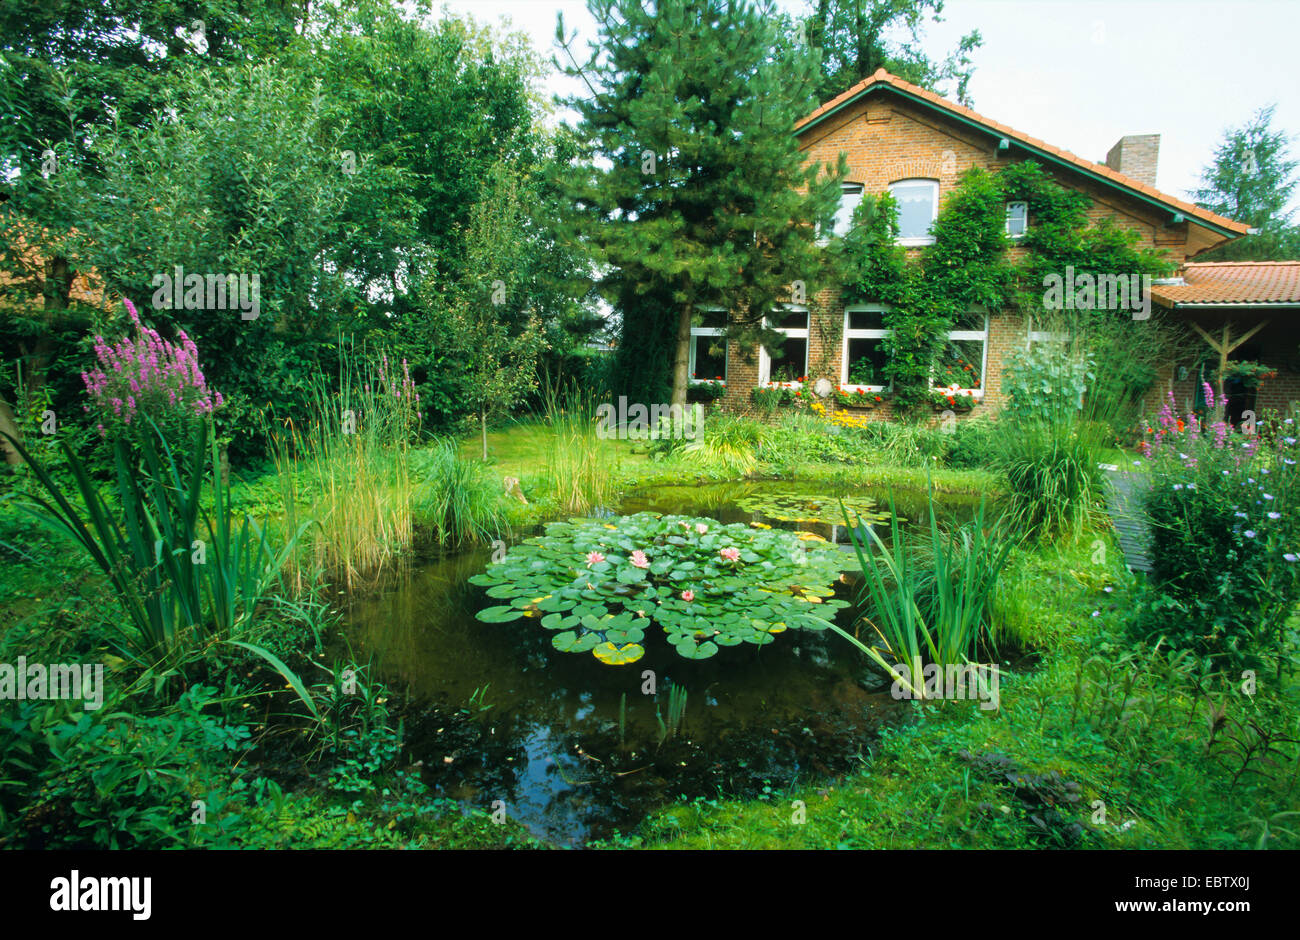 Jardín con estanque natural, Alemania Foto de stock